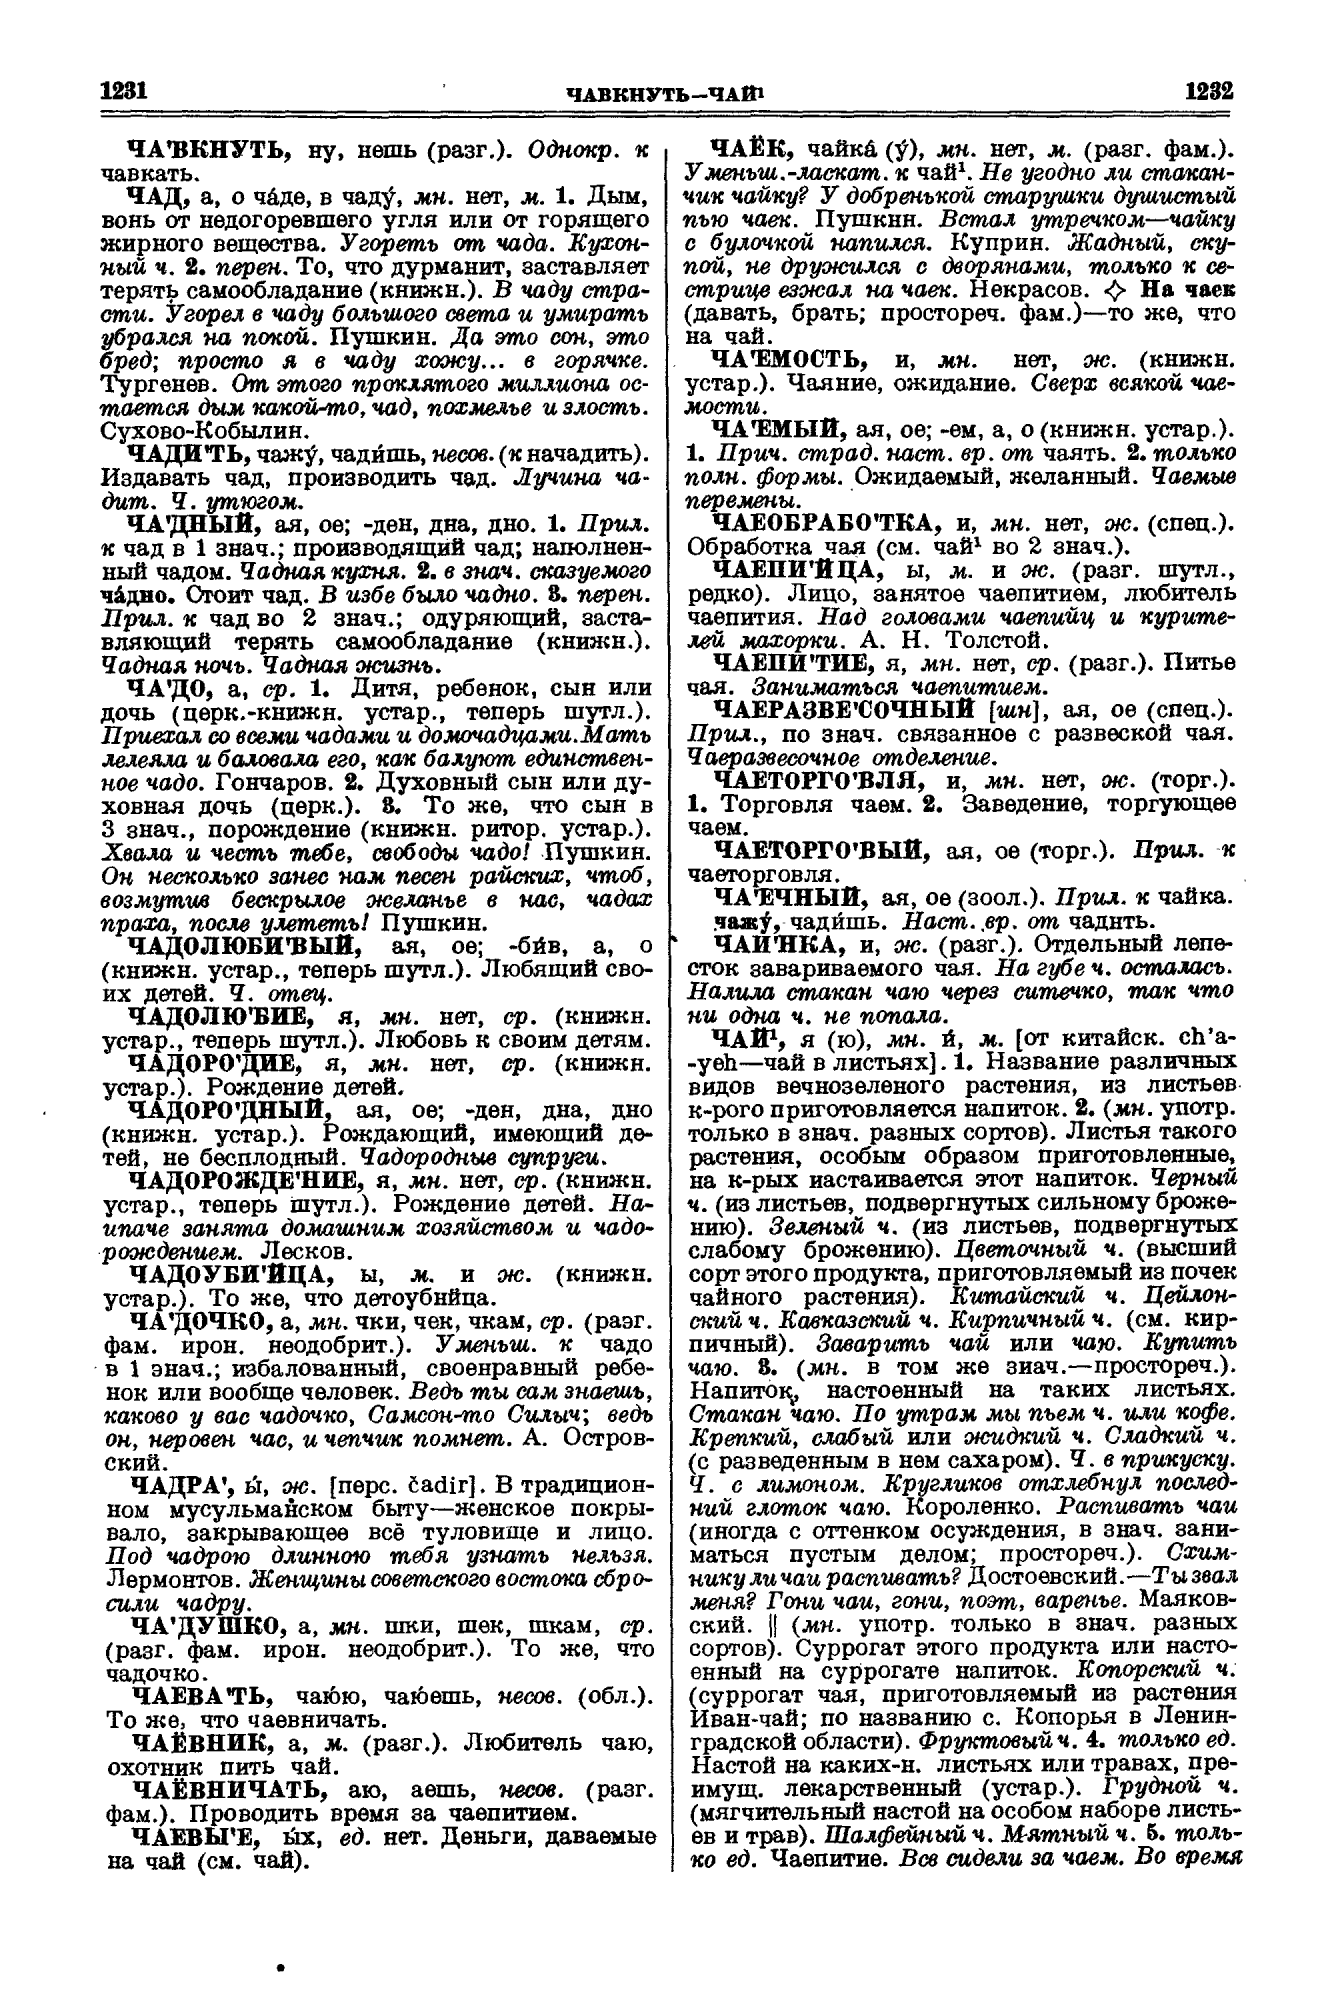 Фотокопия pdf / скан страницы 616 толкового словаря Ушакова (том 1)